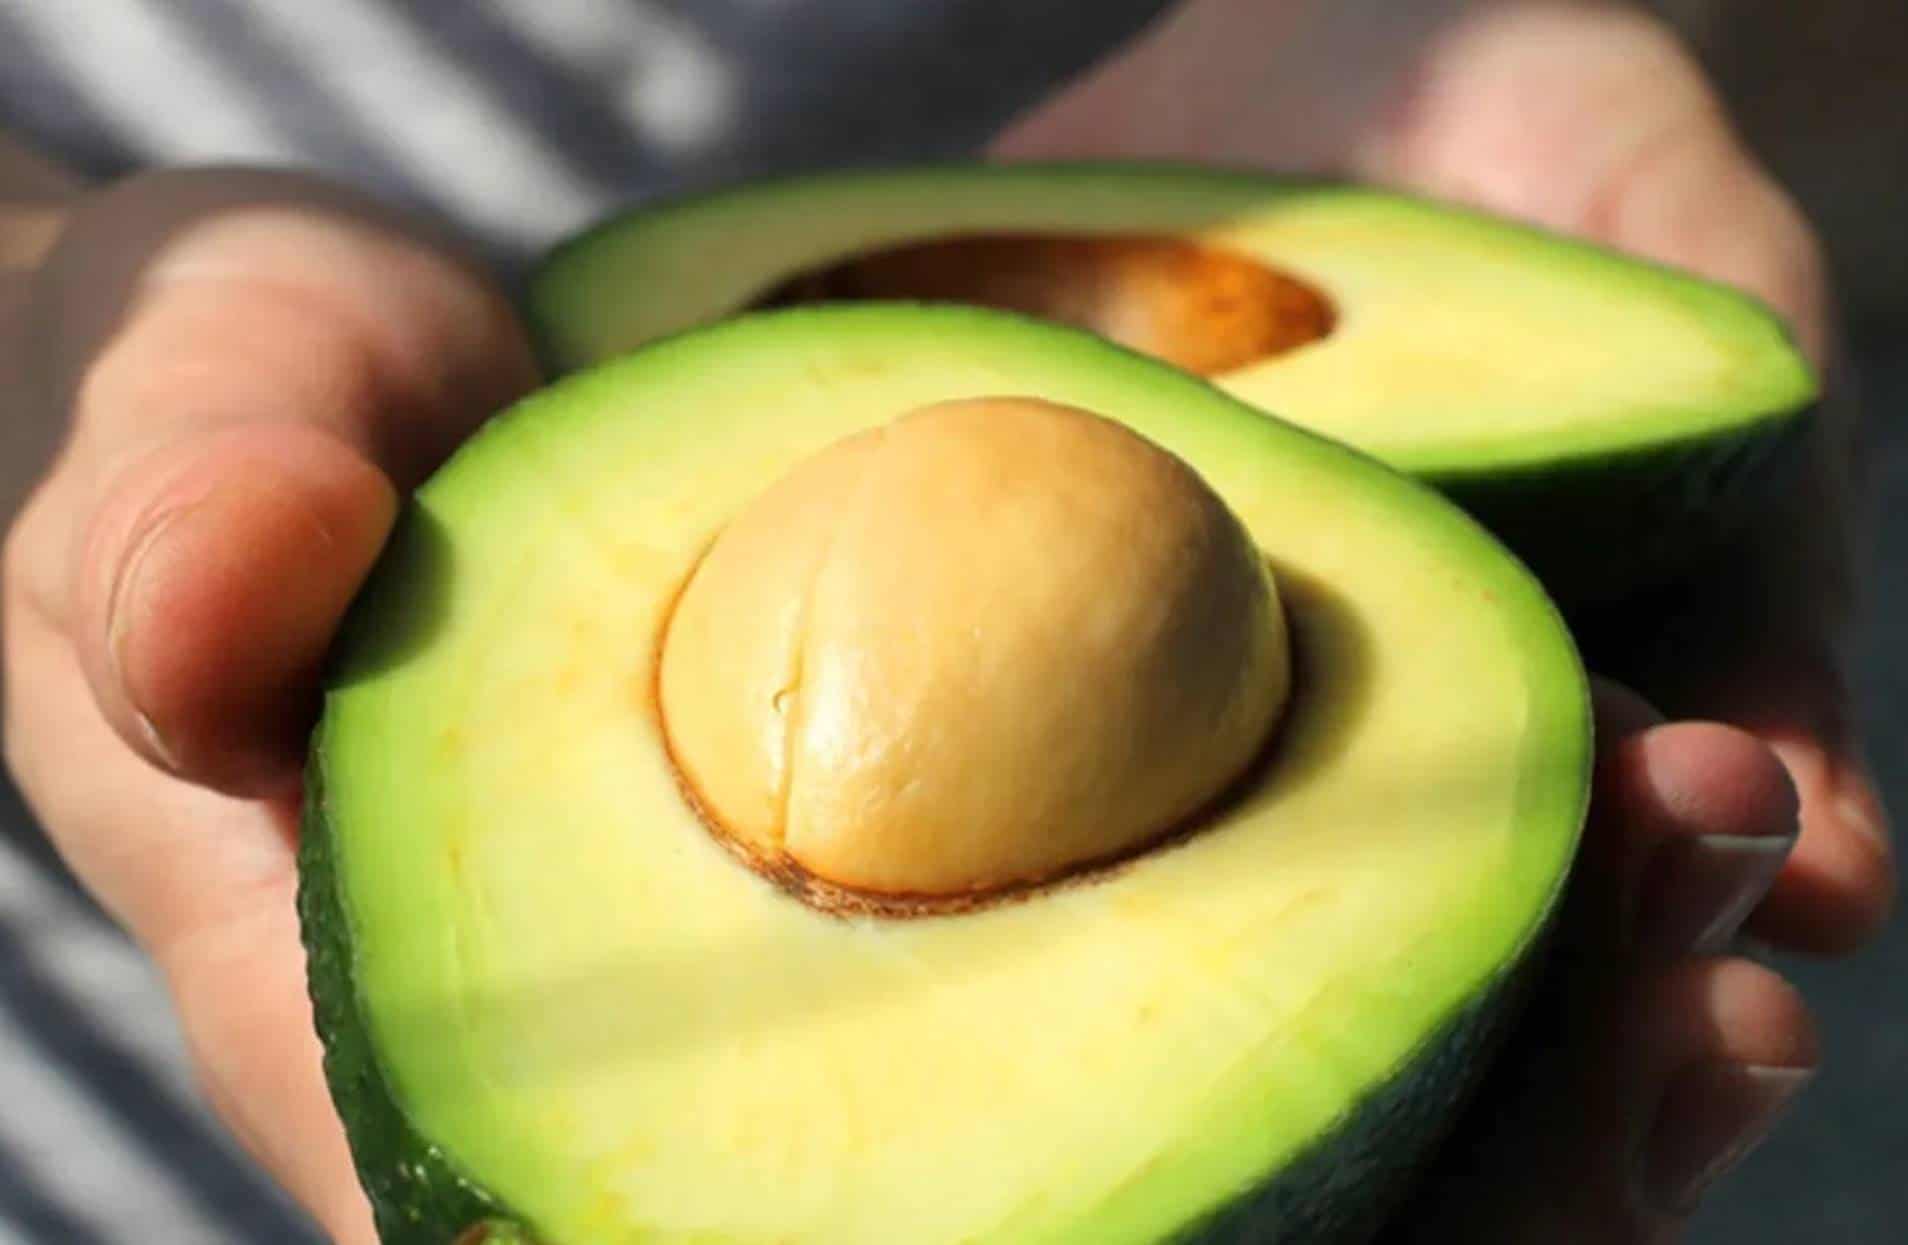 O segredo para amadurecer um abacate em 10 minutos sem perder a vitamina